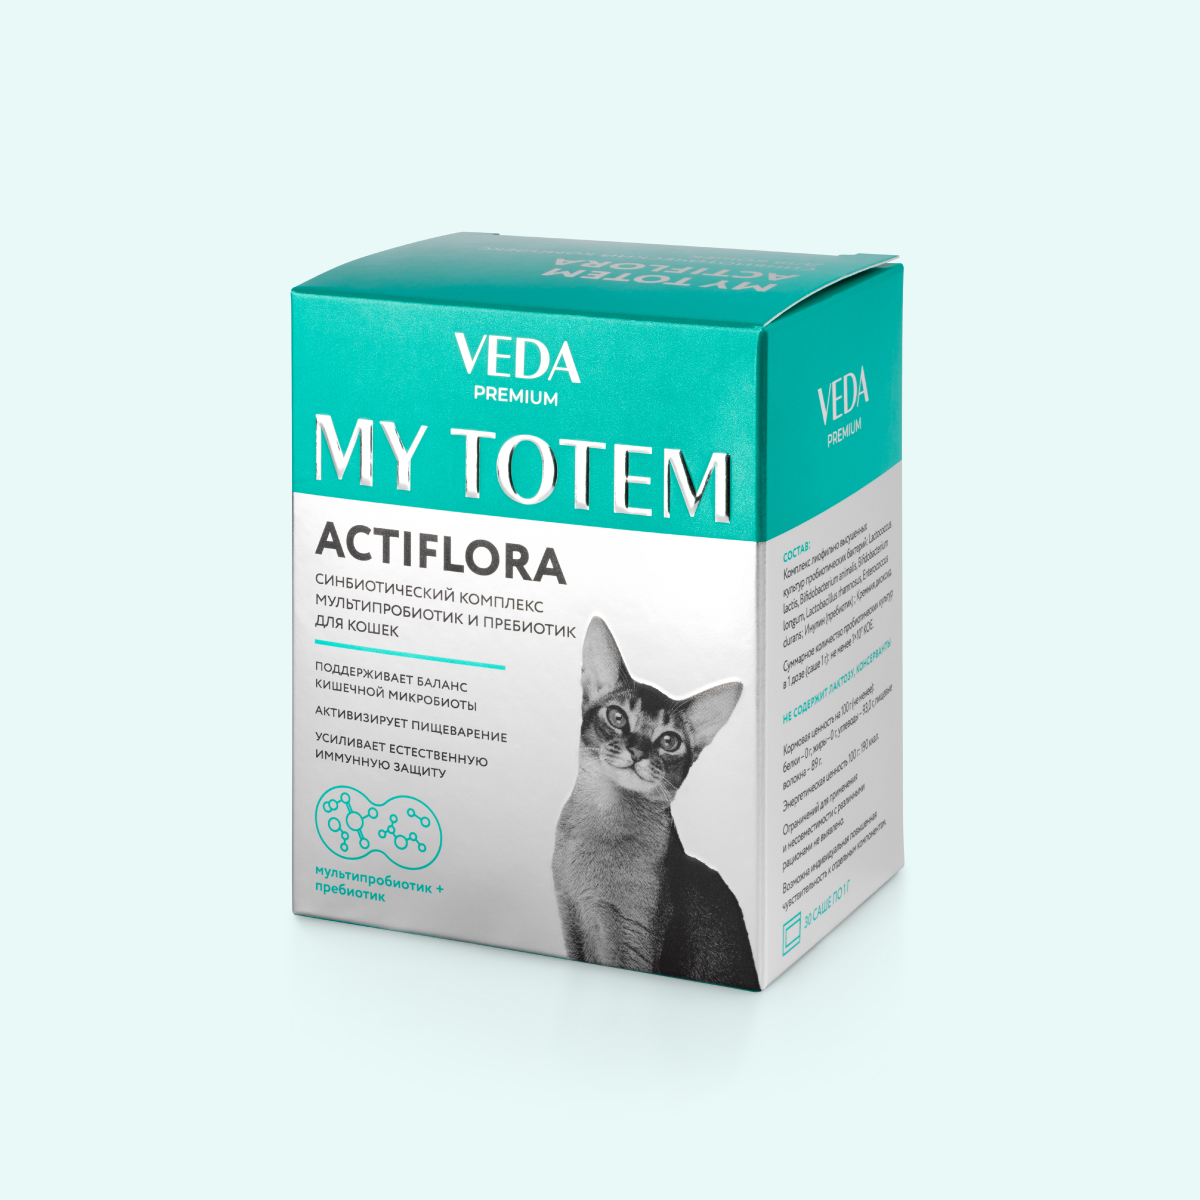 Комплекс пробиотиков и пребиотика для кошек ACTIFLORA MY TOTEM